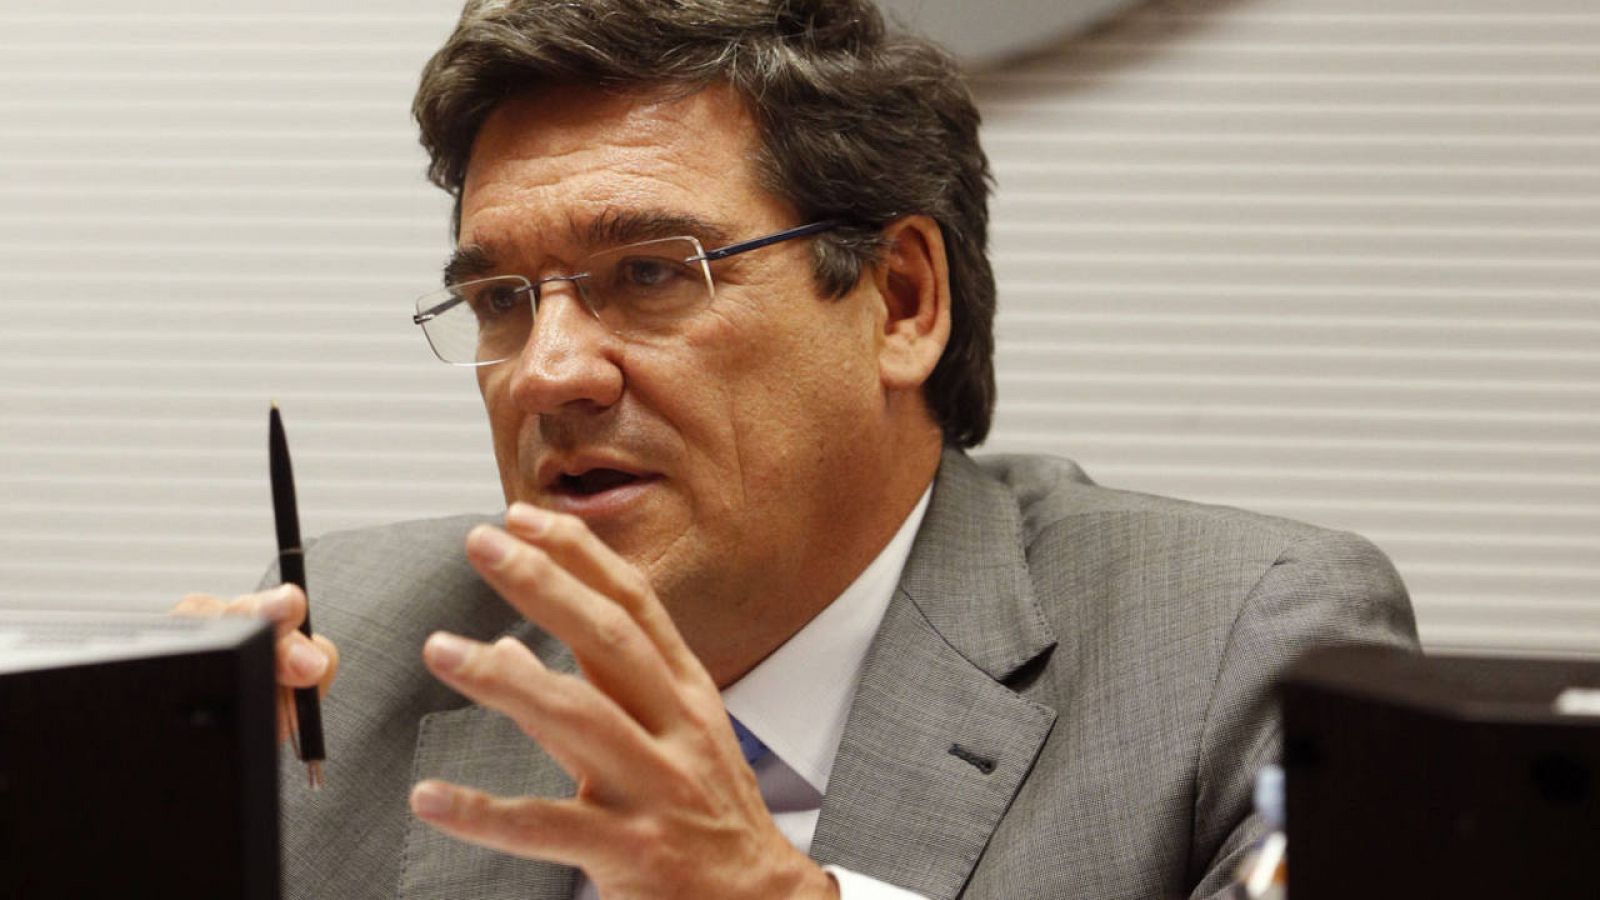 El presidente de la Autoridad Independiente de Responsabilidad Fiscal (Airef), José Luis Escriva